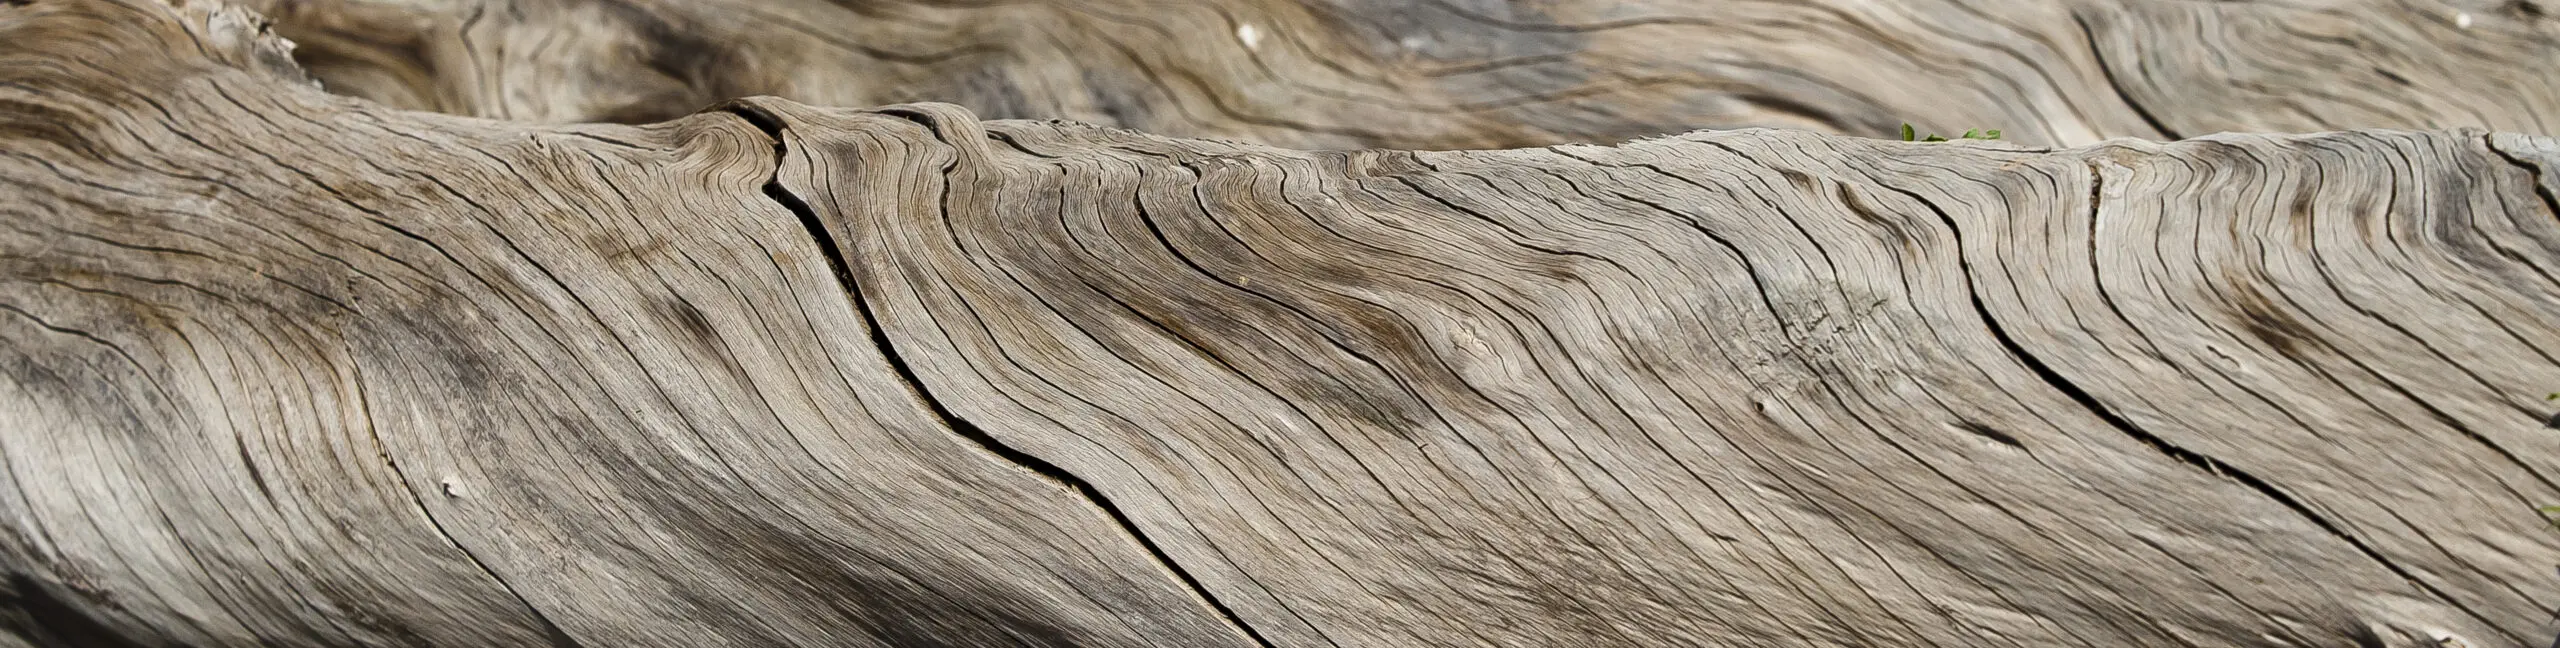 Wandbild (411) Twisted Wood präsentiert: Details und Strukturen,Zen & Wellness,Natur,Makro,Sonstige Pflanzen,Sonstige Naturdetails